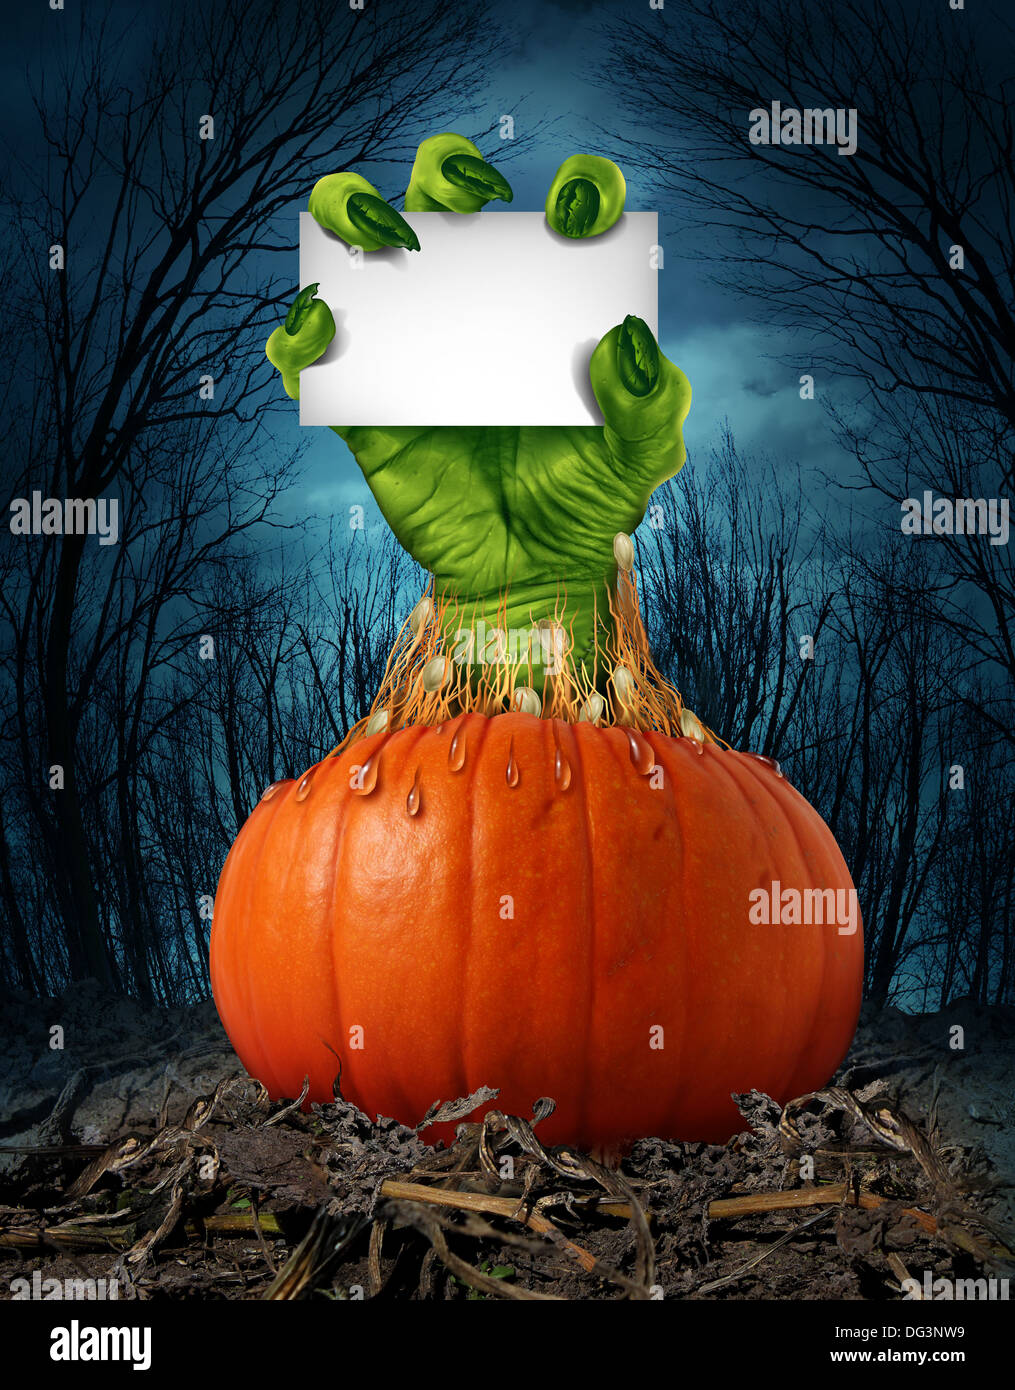 Citrouille Zombie signe avec un green hand holding a blank sign card comme un symbole effrayant ou halloween creepy avec texture peau ridée monster doigts sortant d'une citrouille dans un ouvert humide spooky sombre forêt. Banque D'Images